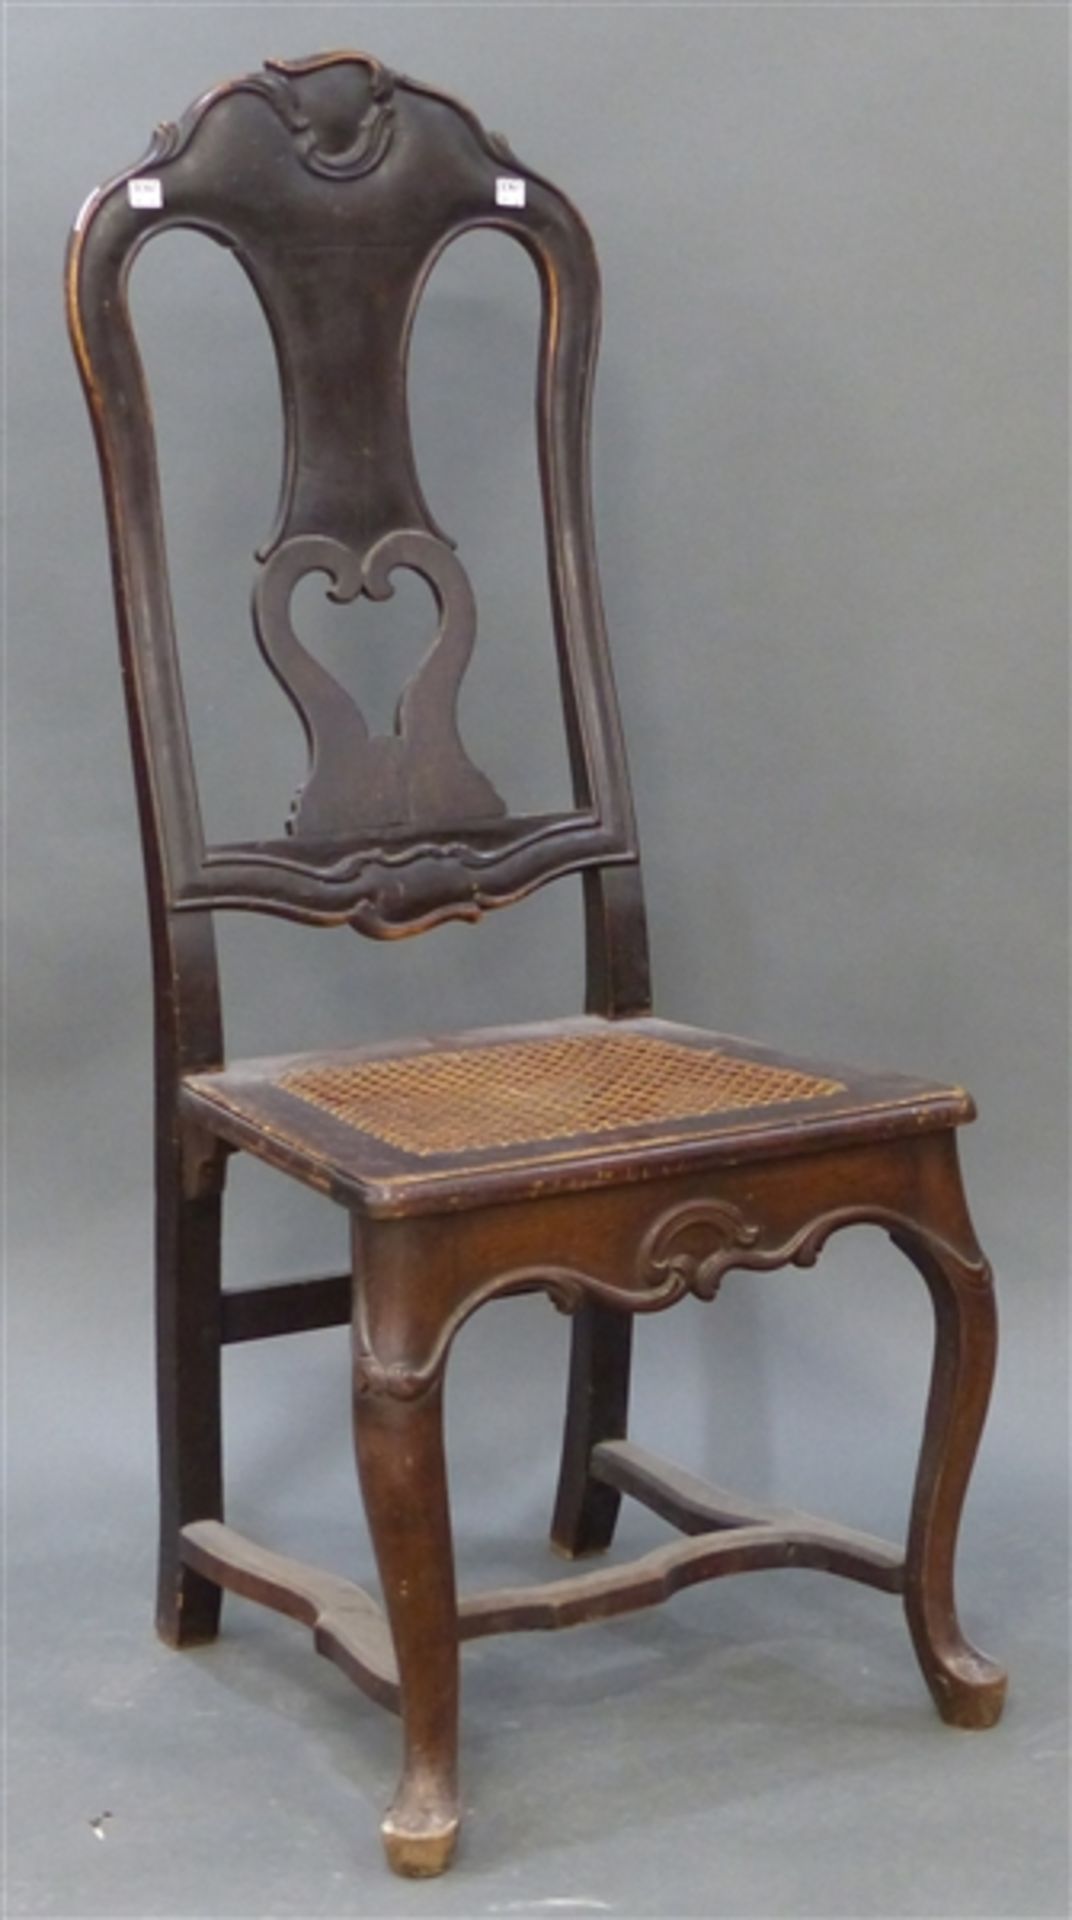 Barockstuhl Eiche, 18. Jh., Reliefschnitzereien, Sitzfläche mit Reedgeflecht, h 115 cm